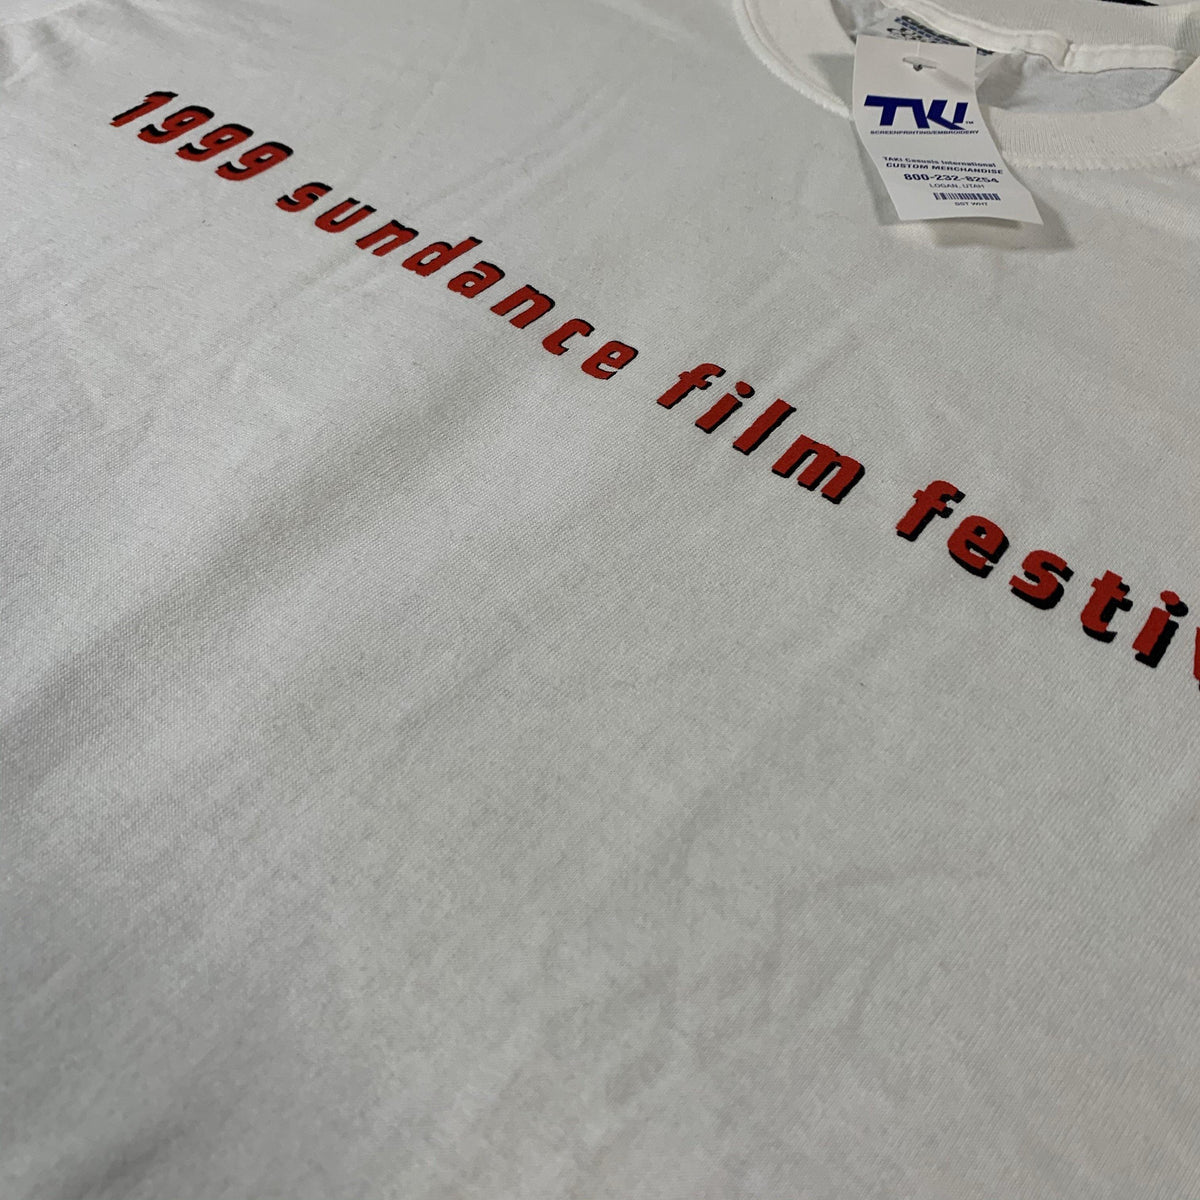 Vintage Sundance Film Festival “1999” T-Shirt - jointcustodydc